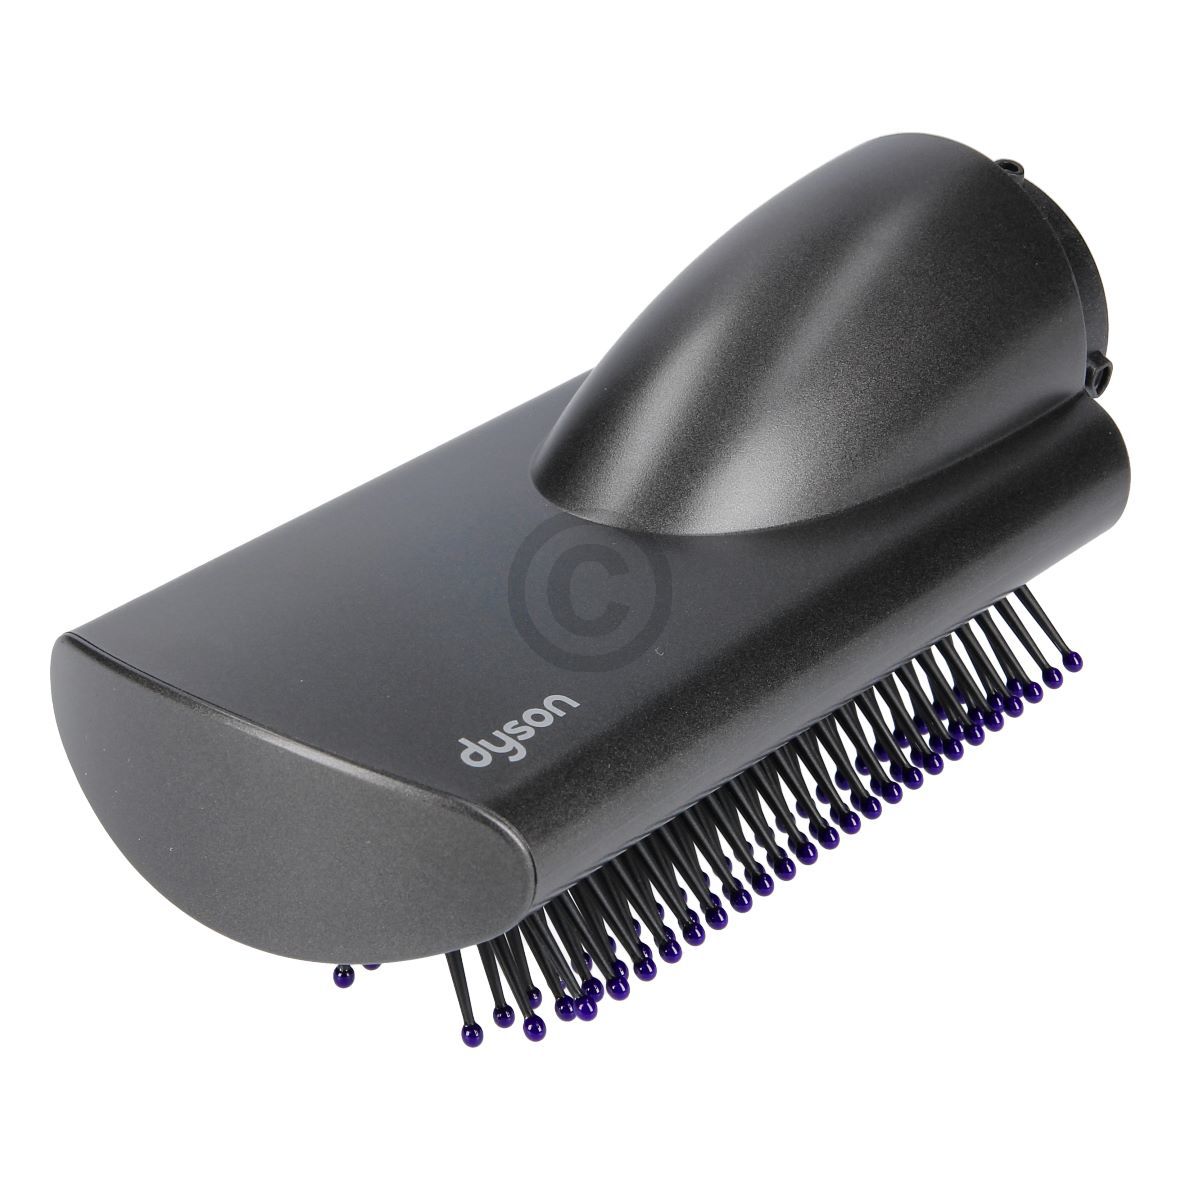 Glättbürste weiche Borsten dyson 969484-01 für Airwrap™ Haarstyler